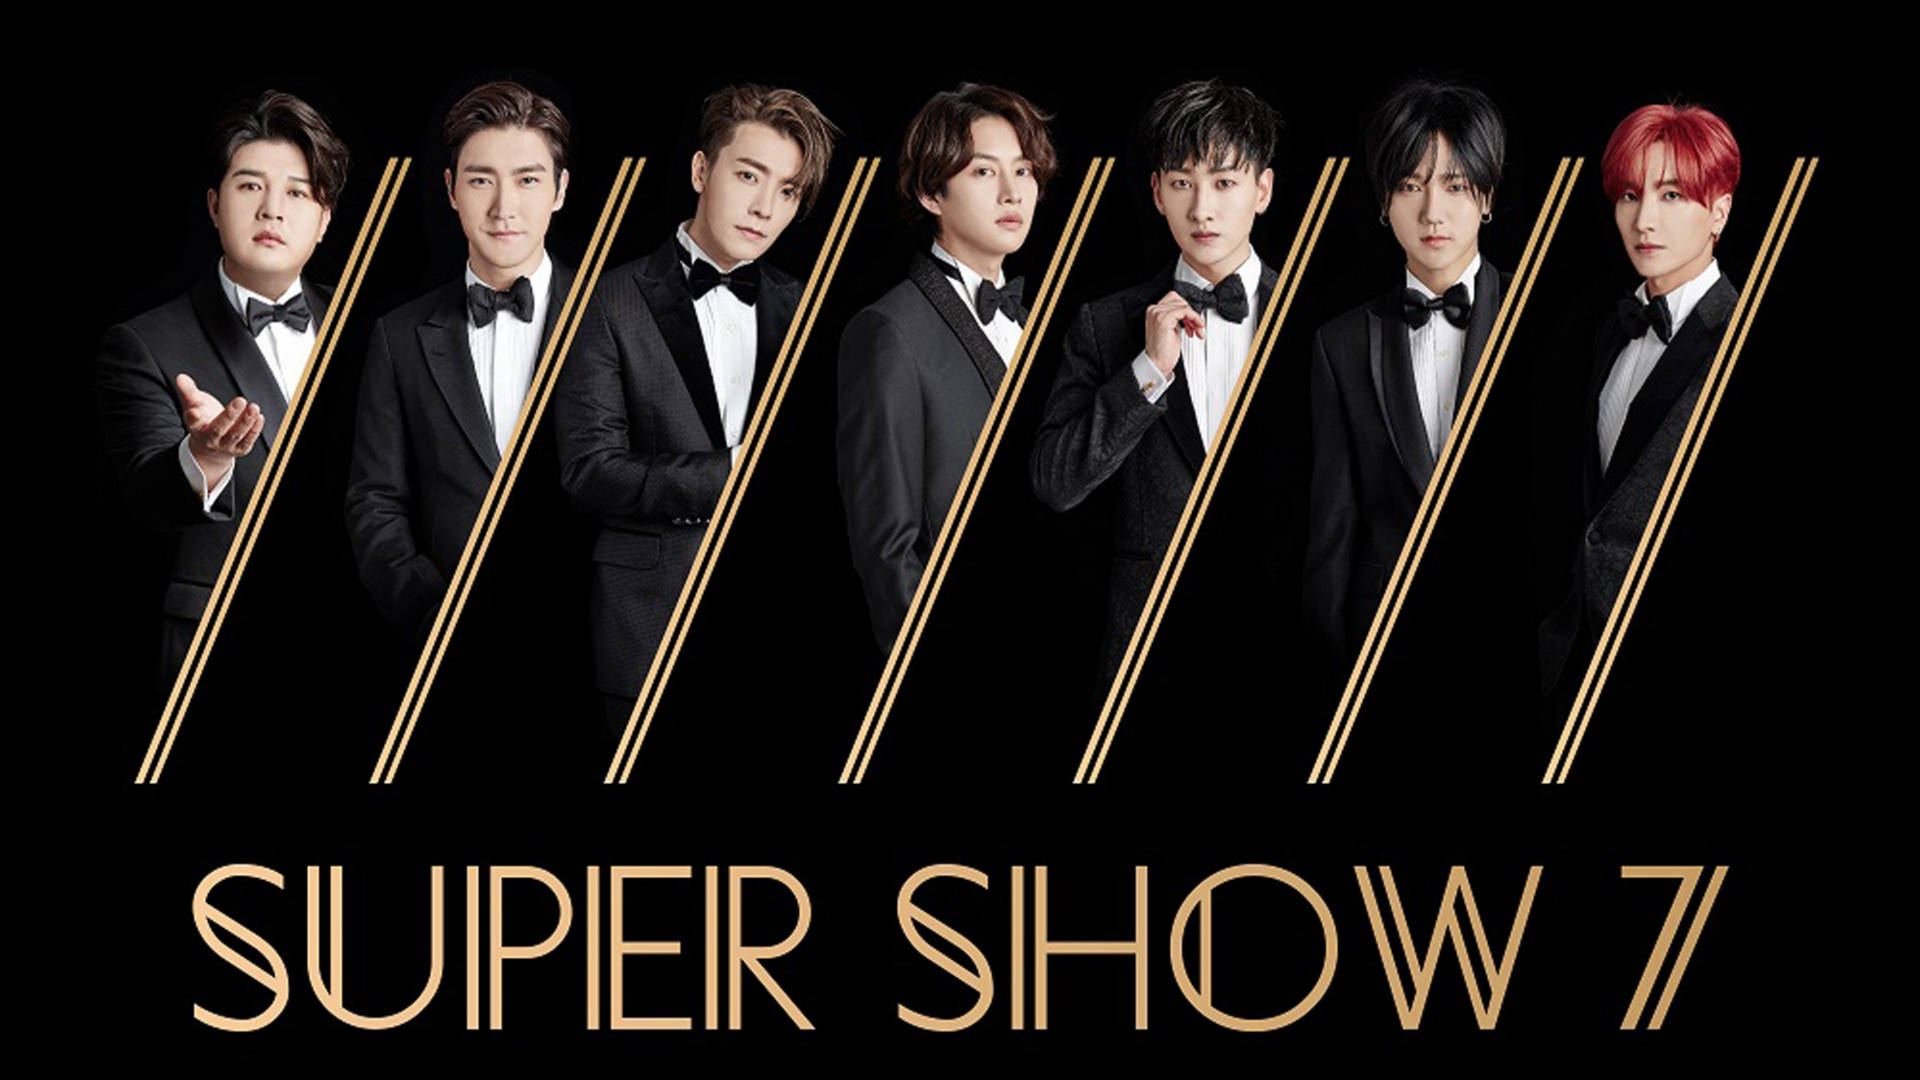 Super Junior Super Show 7 Wallpaper